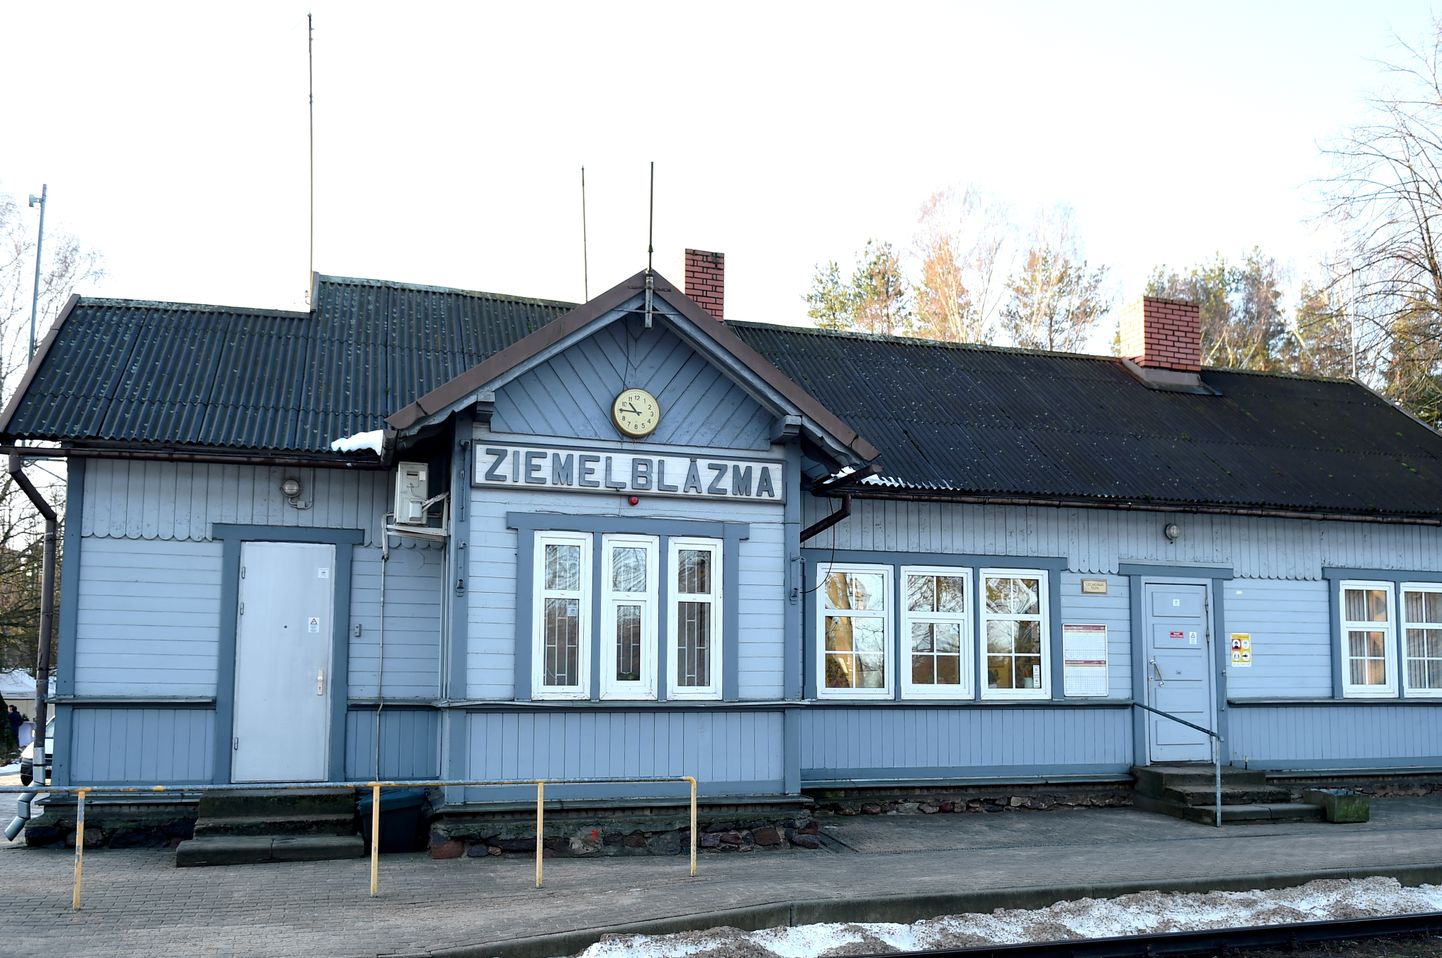 Dzelzceļa stacija "Ziemeļblāzma".